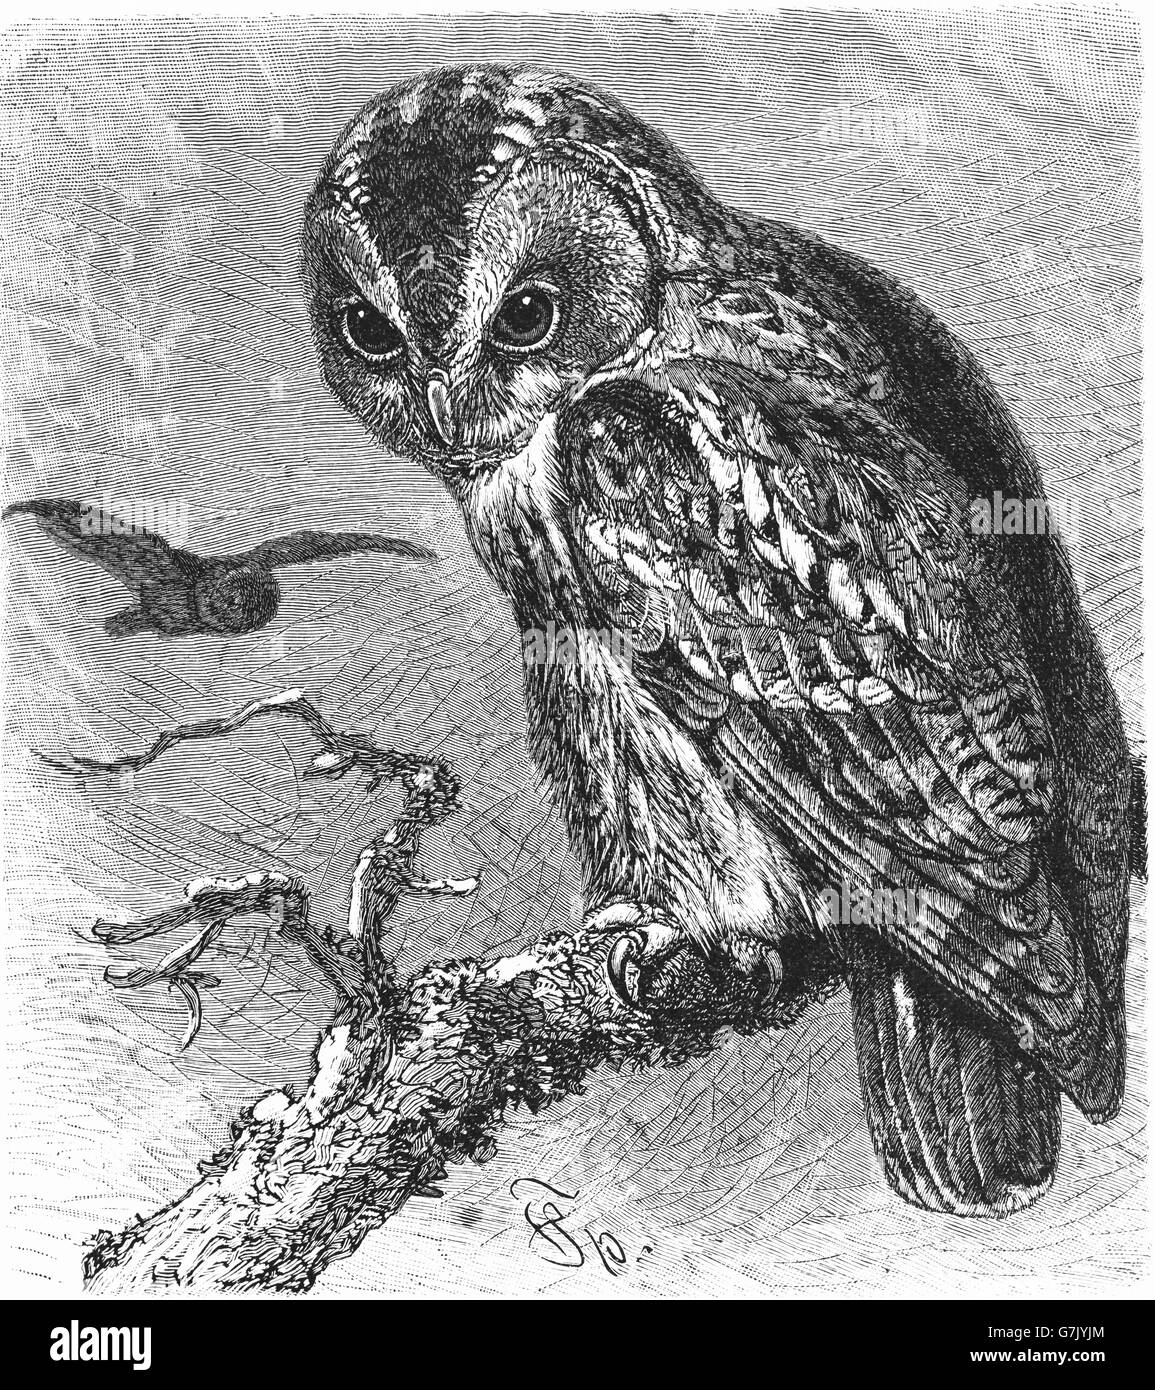 Chouette hulotte, Brown Owl Strix Aluco enr, illustration de livre, datée du 1904 Banque D'Images